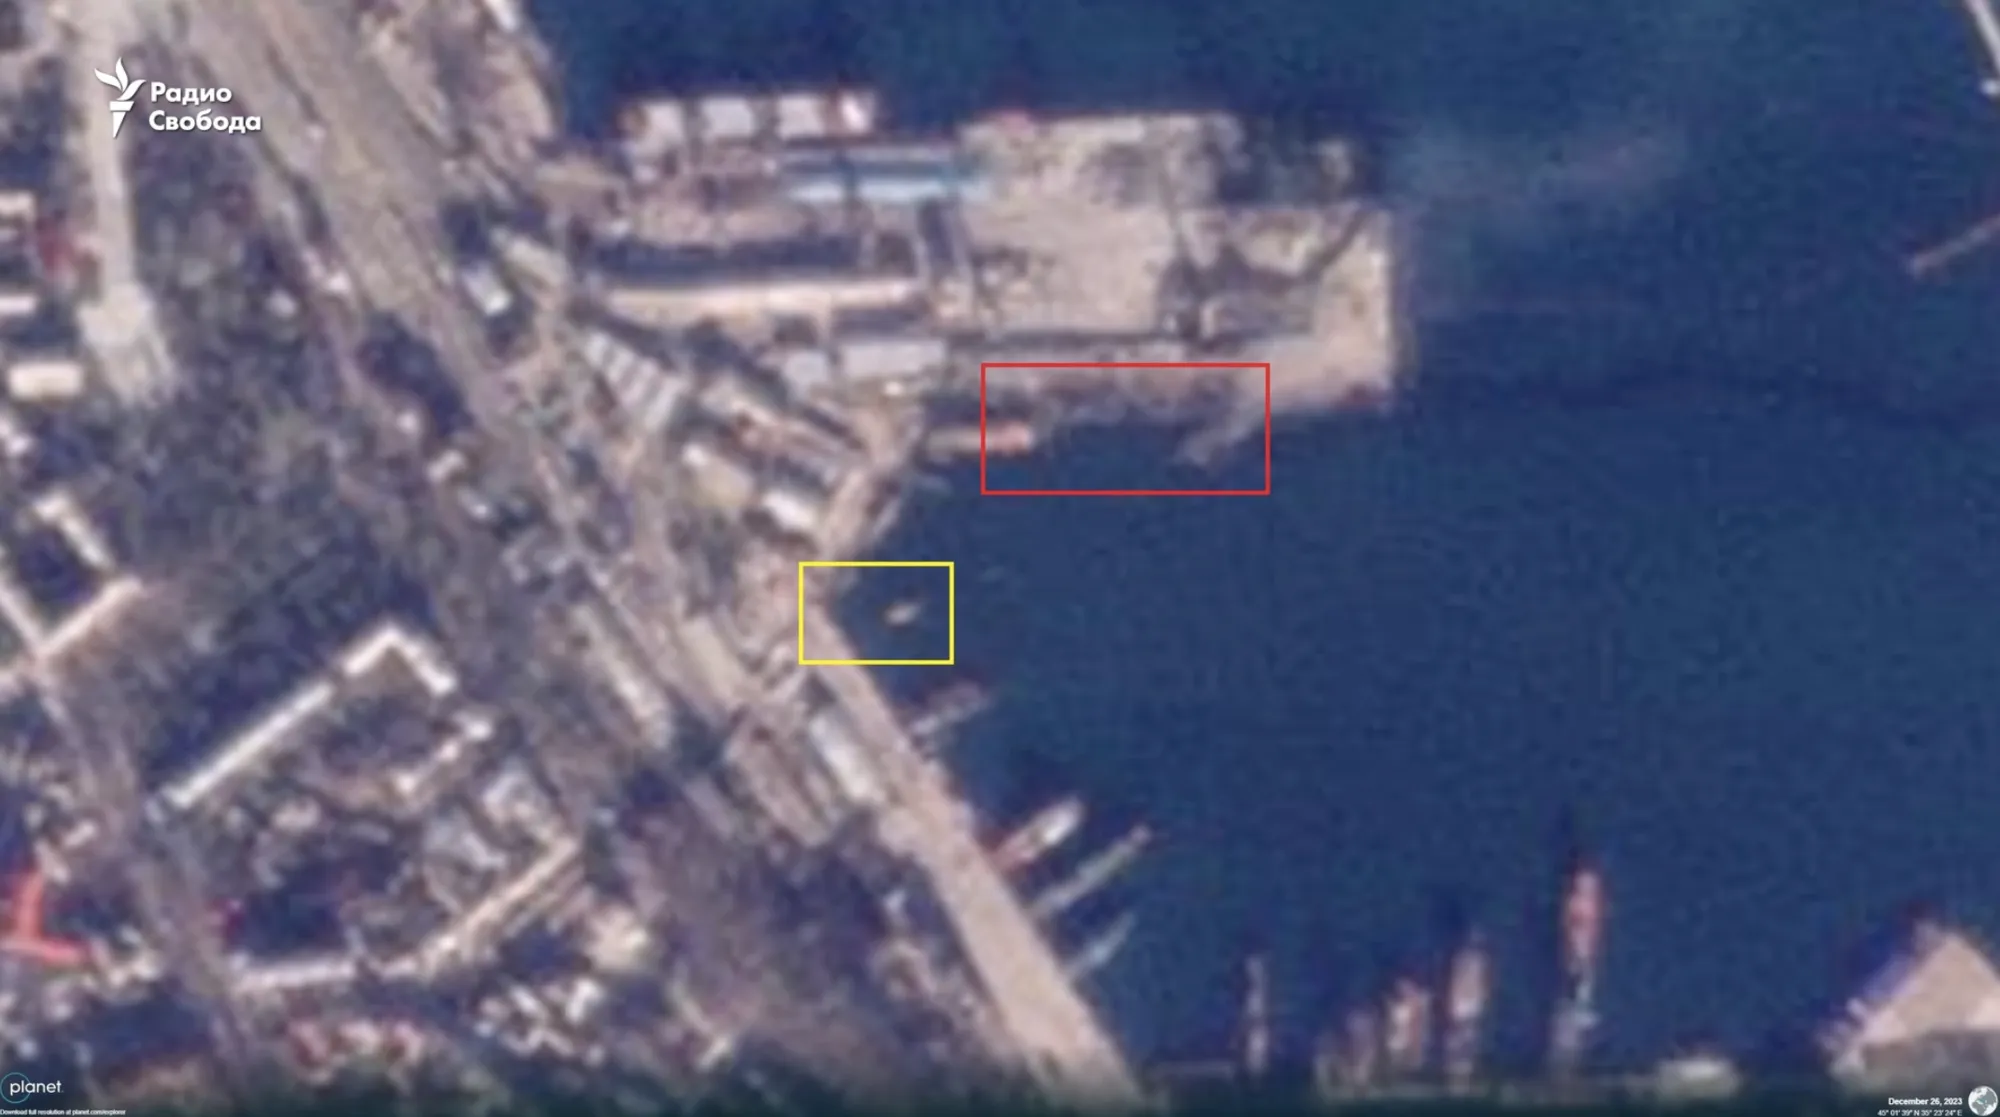 Не только БДК "Новочеркасск": спутниковые снимки подтвердили уничтожение двух российских кораблей в Феодосии. Фото